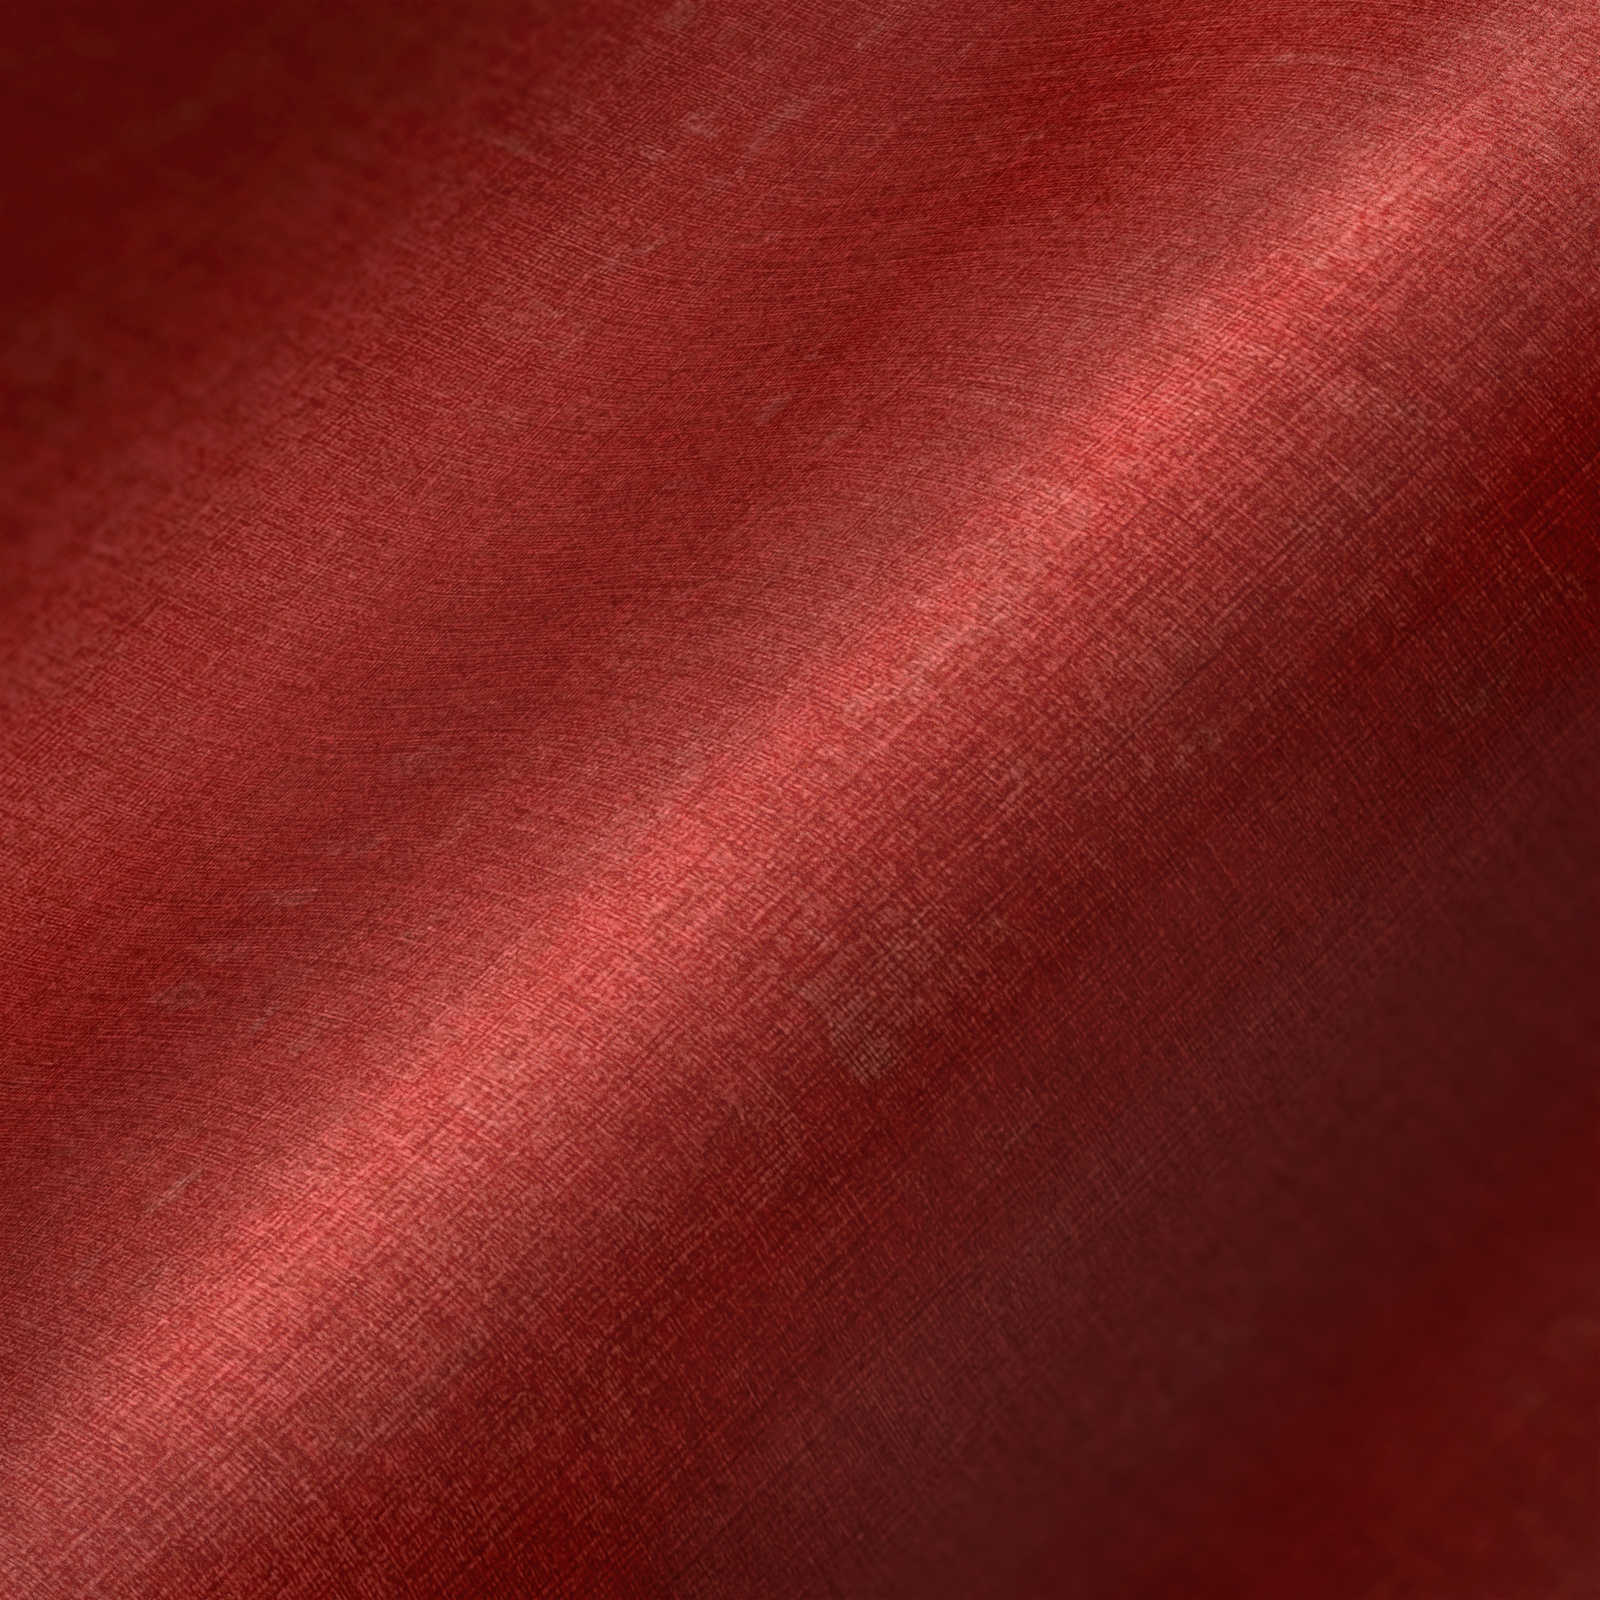             Rood behang effen en gevlekt met structuur reliëf
        